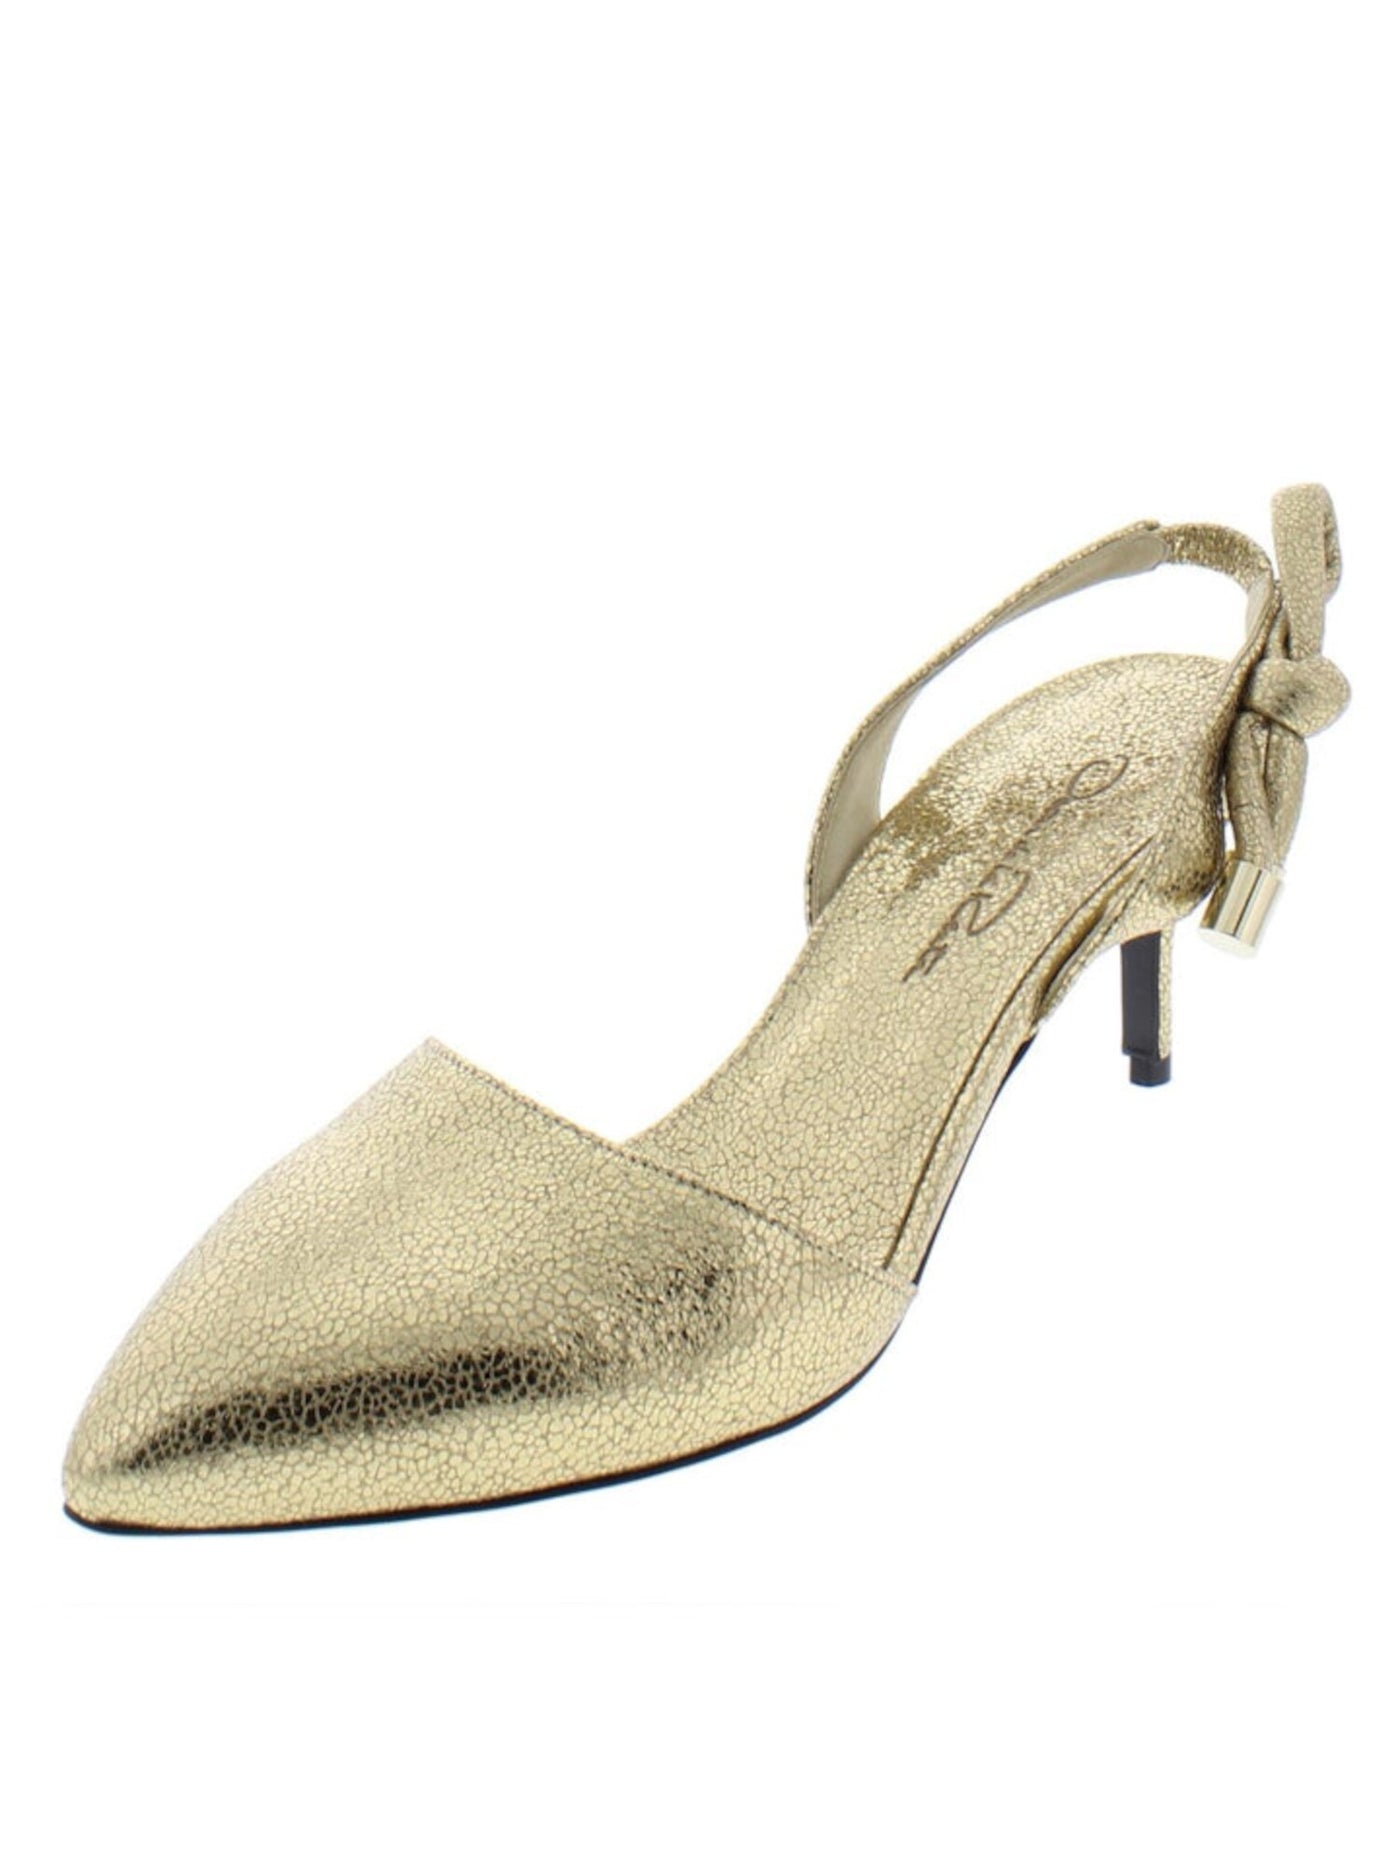 OSCAR DE LA RENTA Womens Gold Knot Metallic Padded Cora Pointed Toe Kitten Heel Slip On Leather Dress Slingback 37